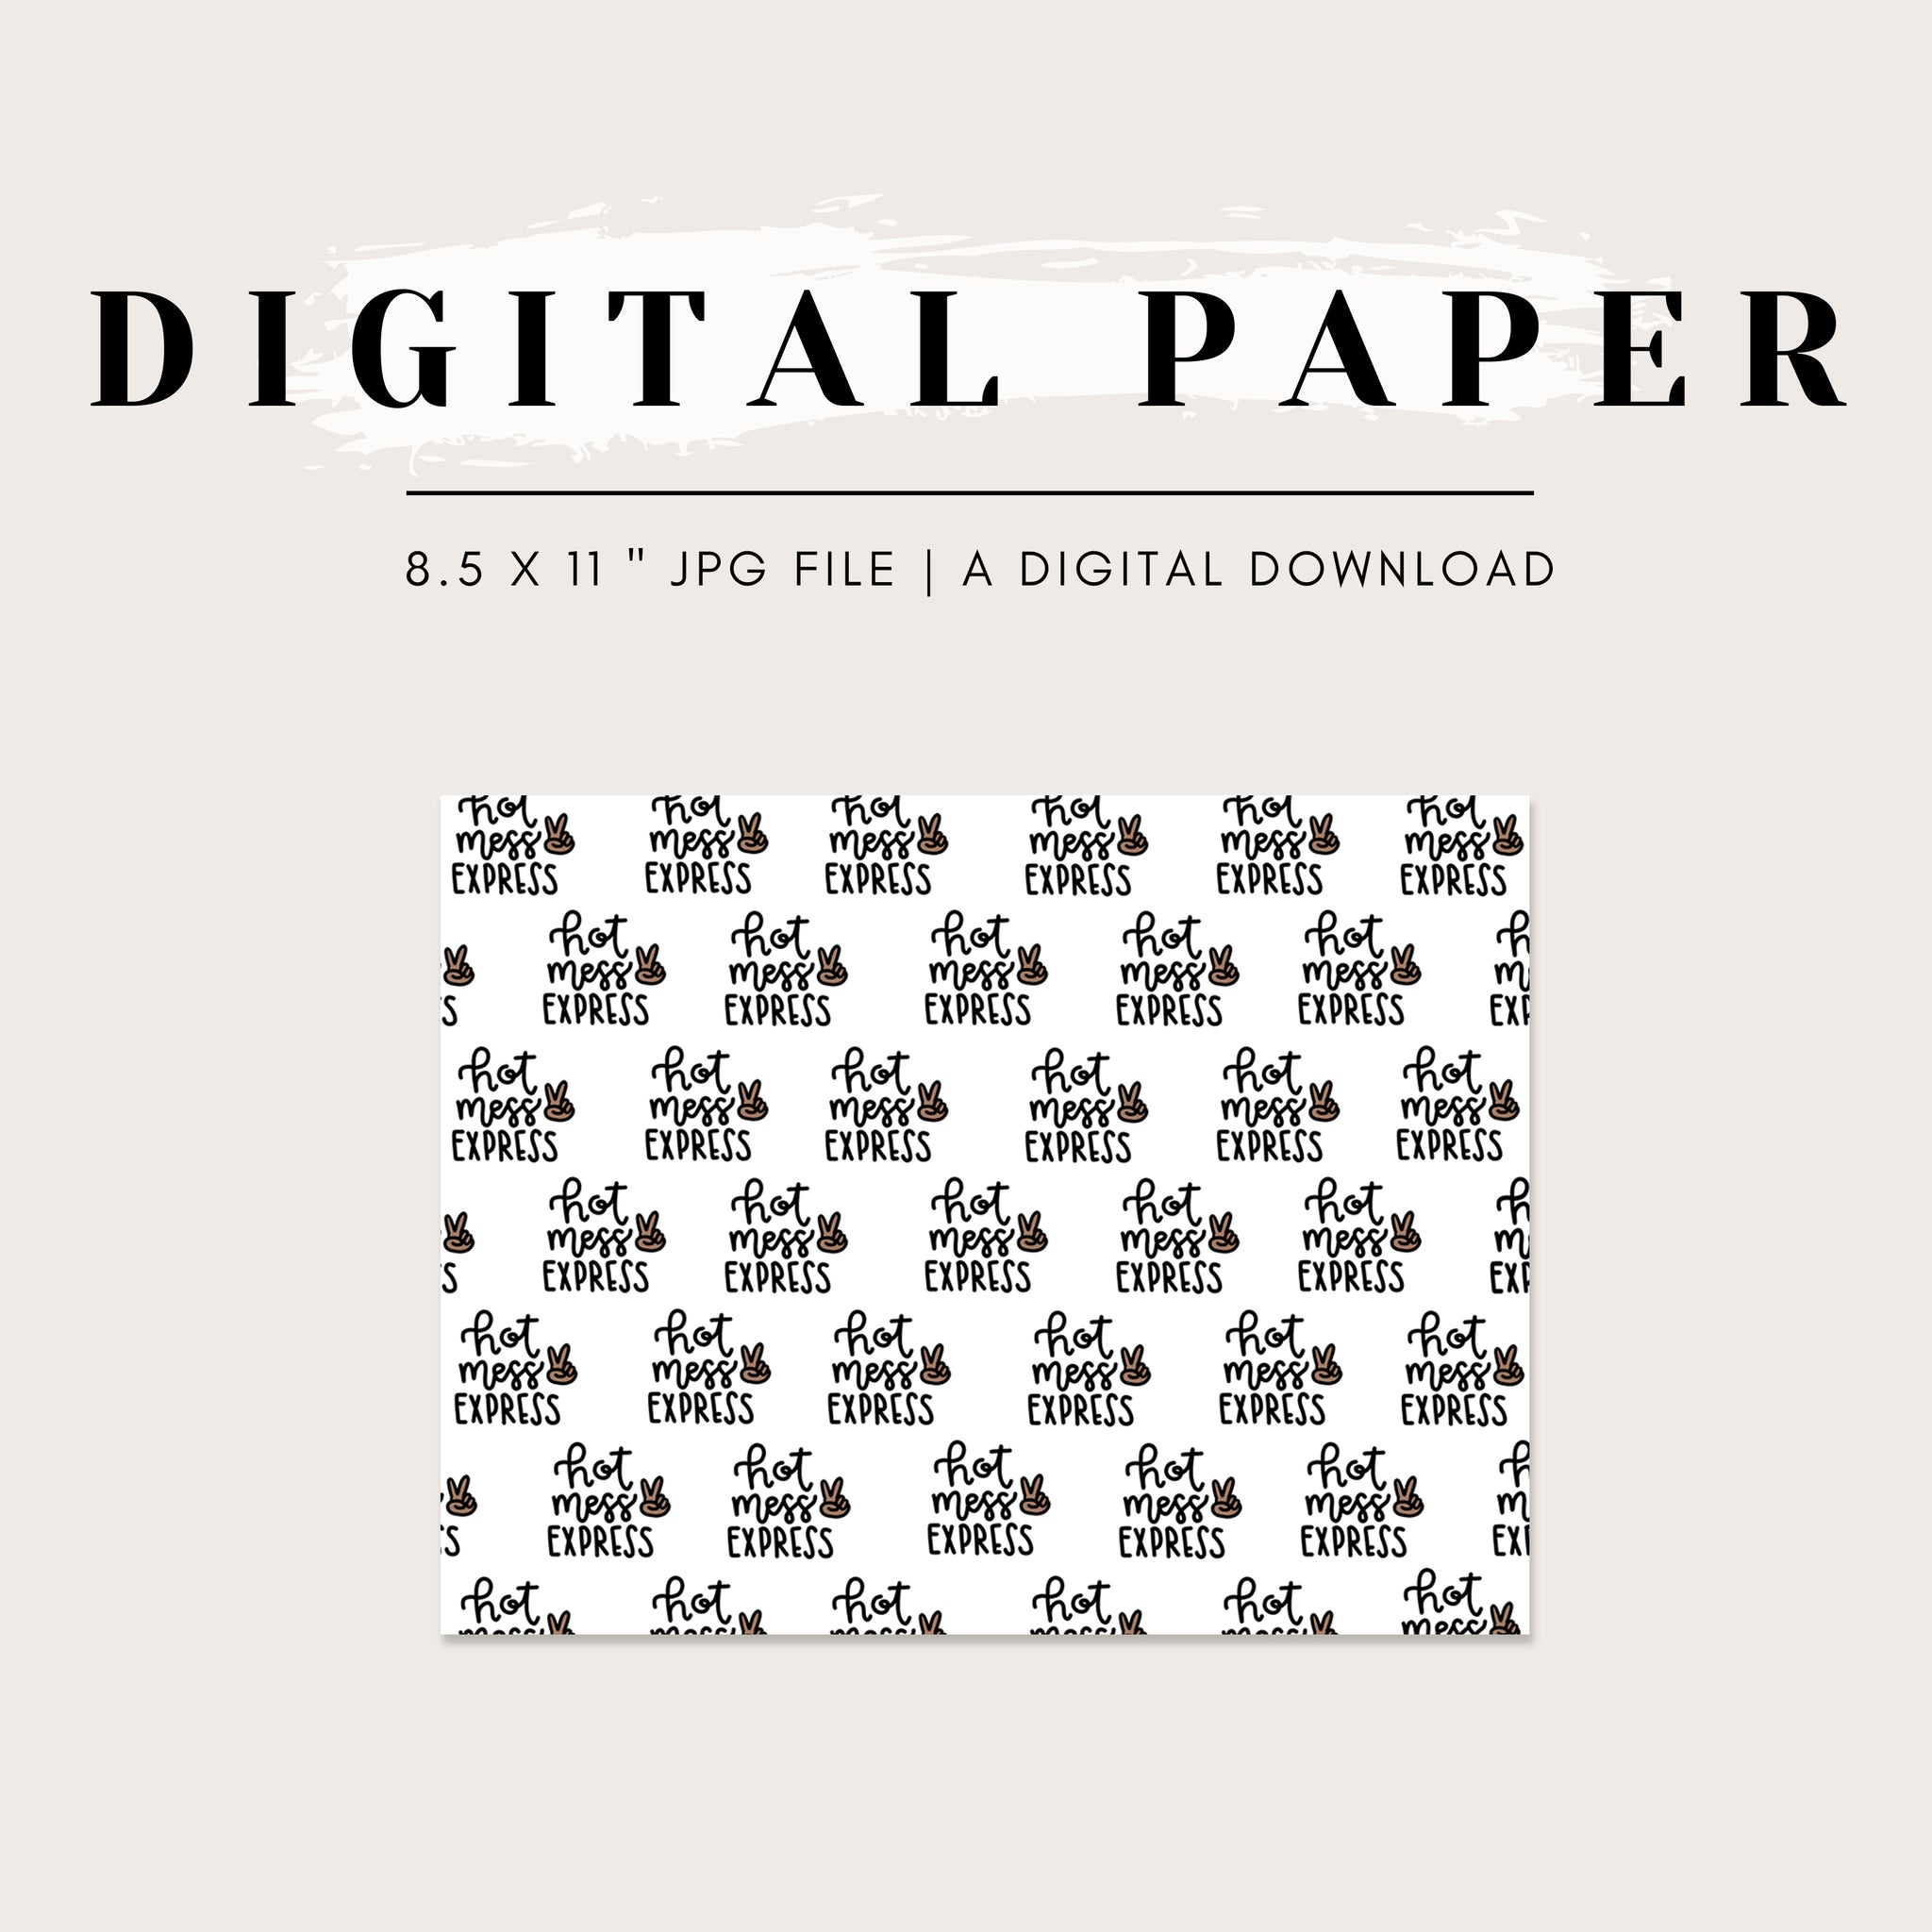 Digital Paper - Hot Mess Express